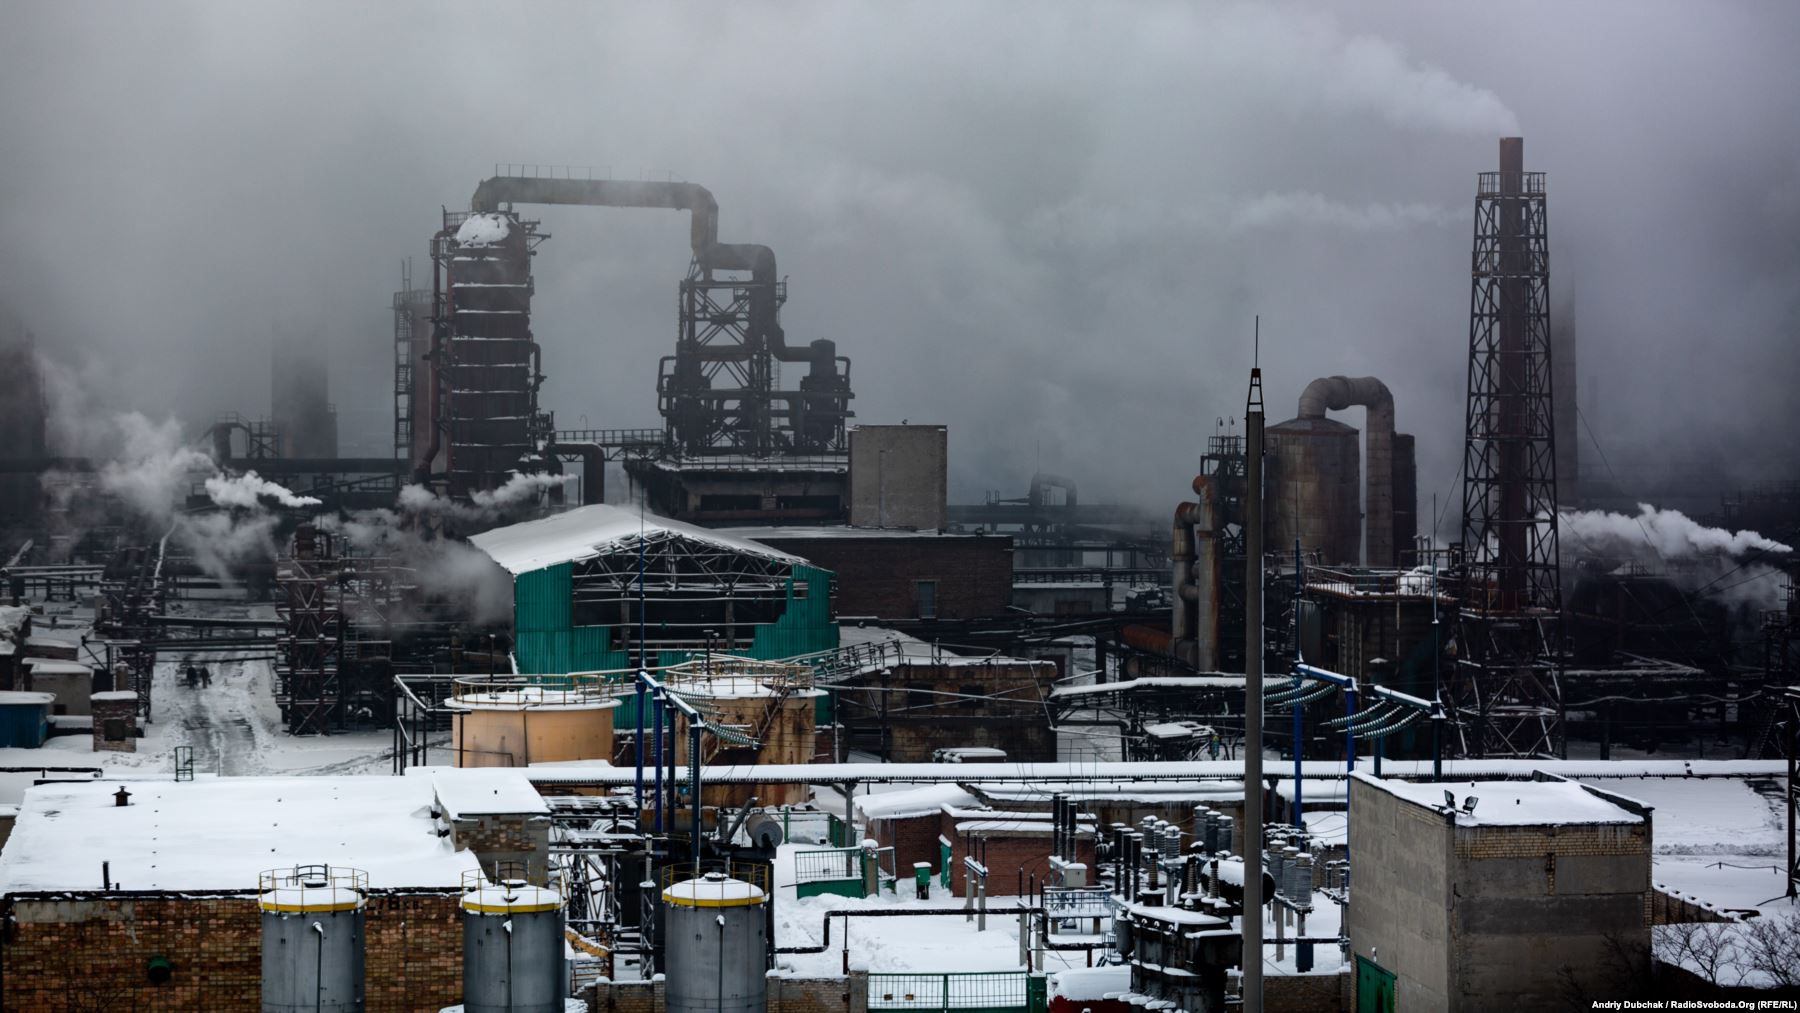 Авдіївський коксохімічний завод (АКХЗ) в Донецькій області є одним з найбільших у Європі з коксохімічних підприємств. Його площа сягає 340 гектарів, тут працюють майже чотири тисячі людей. Удень видобуток коксу становить 9300 тонн